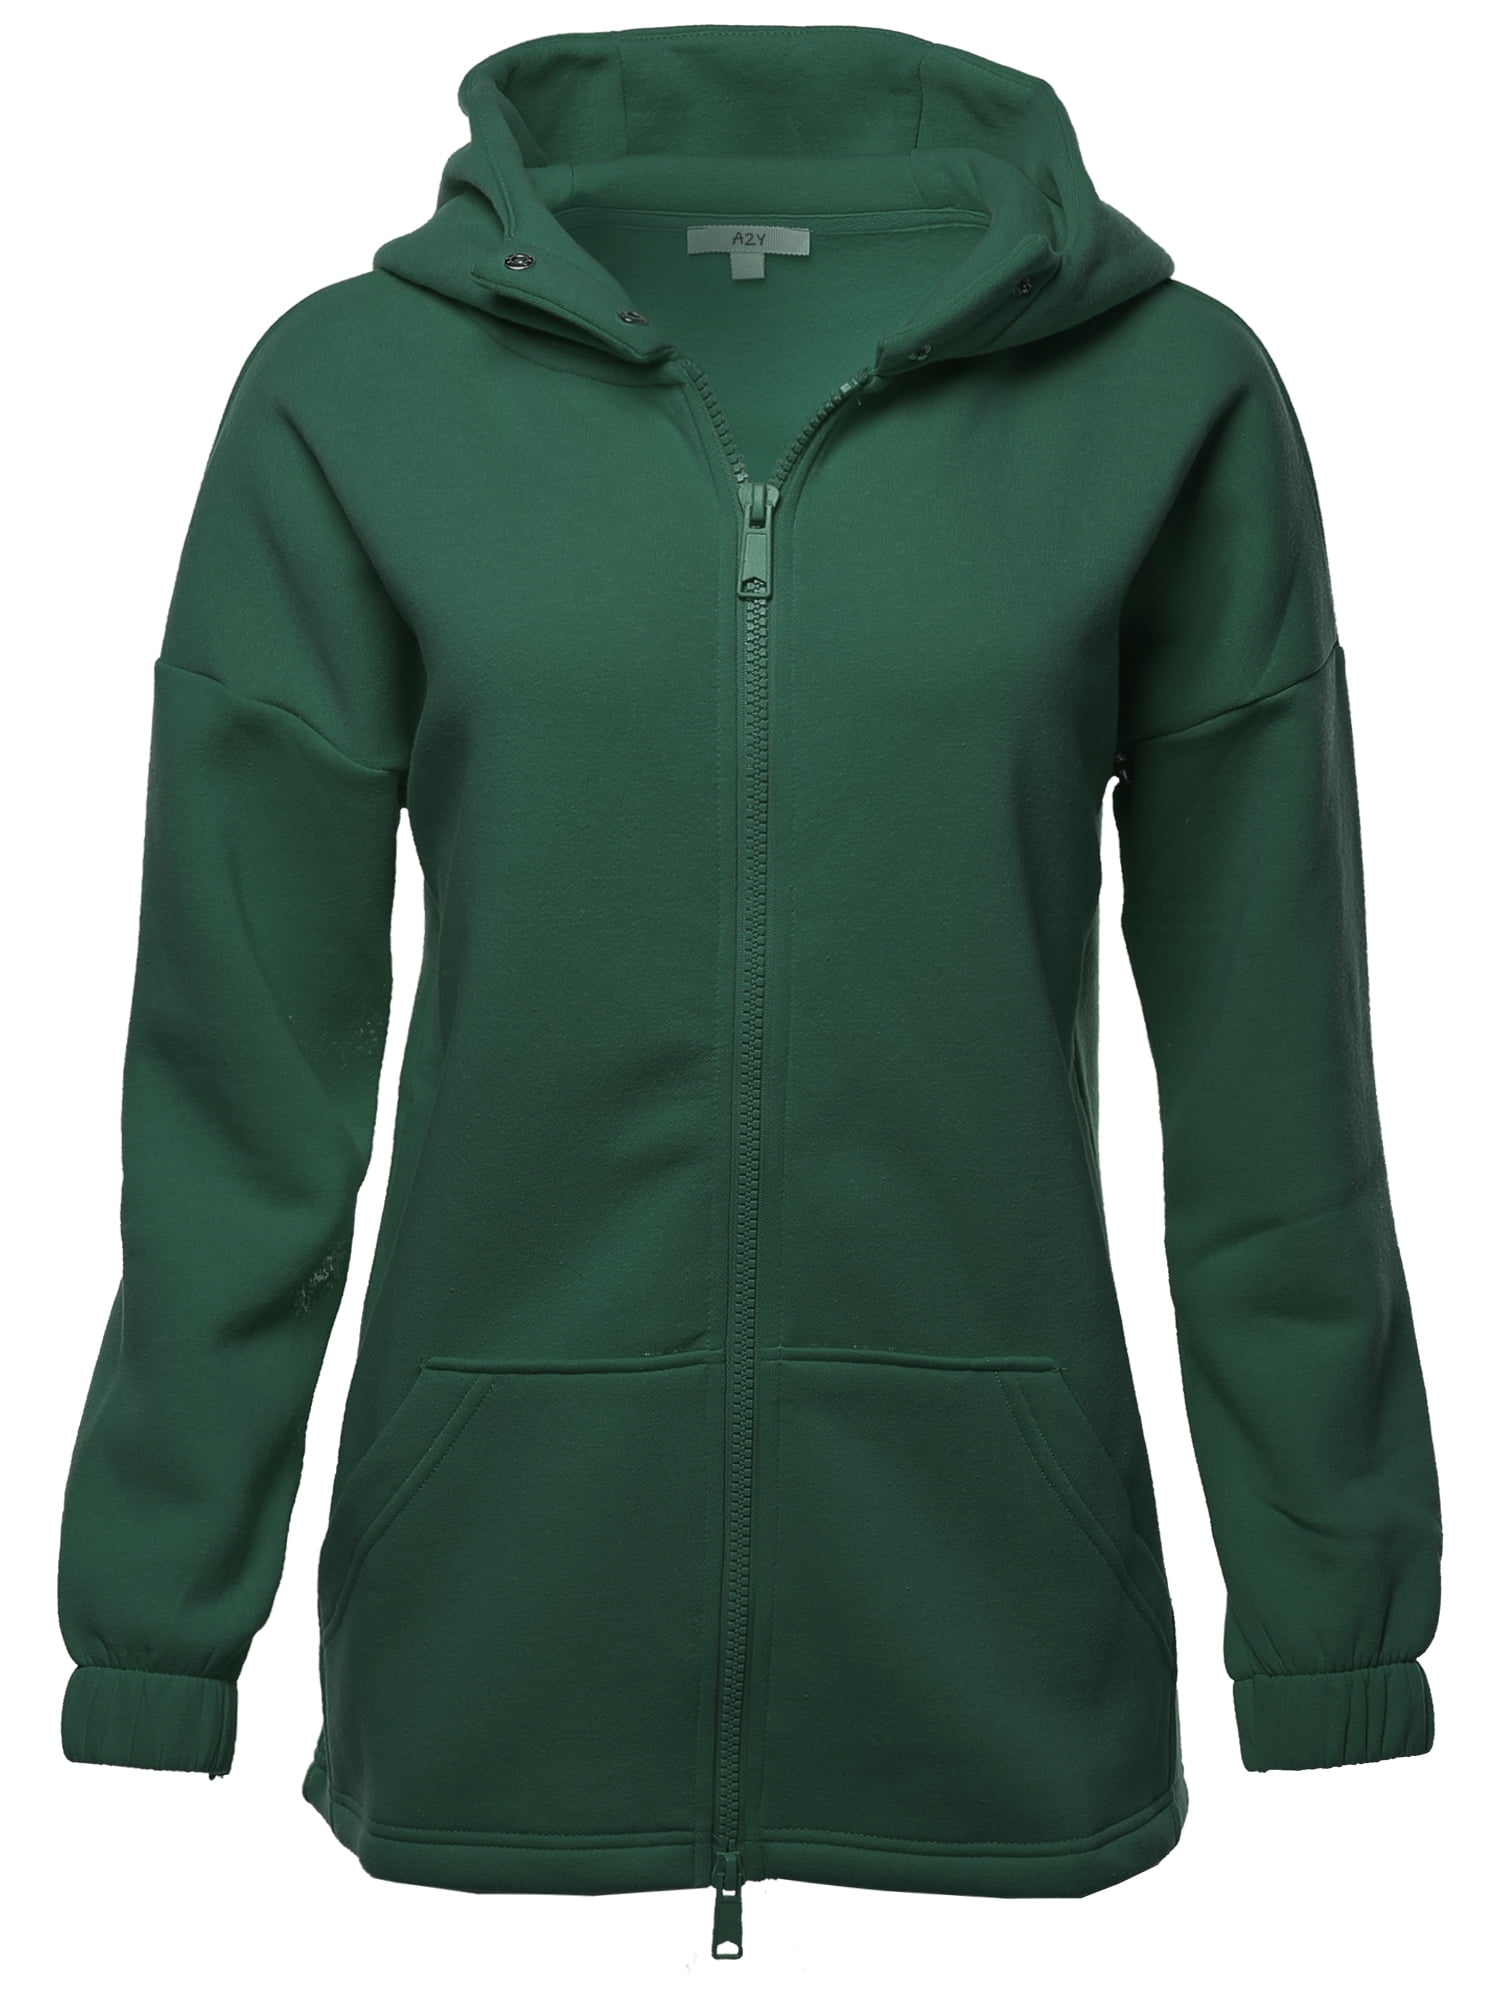 Girls green hoodie